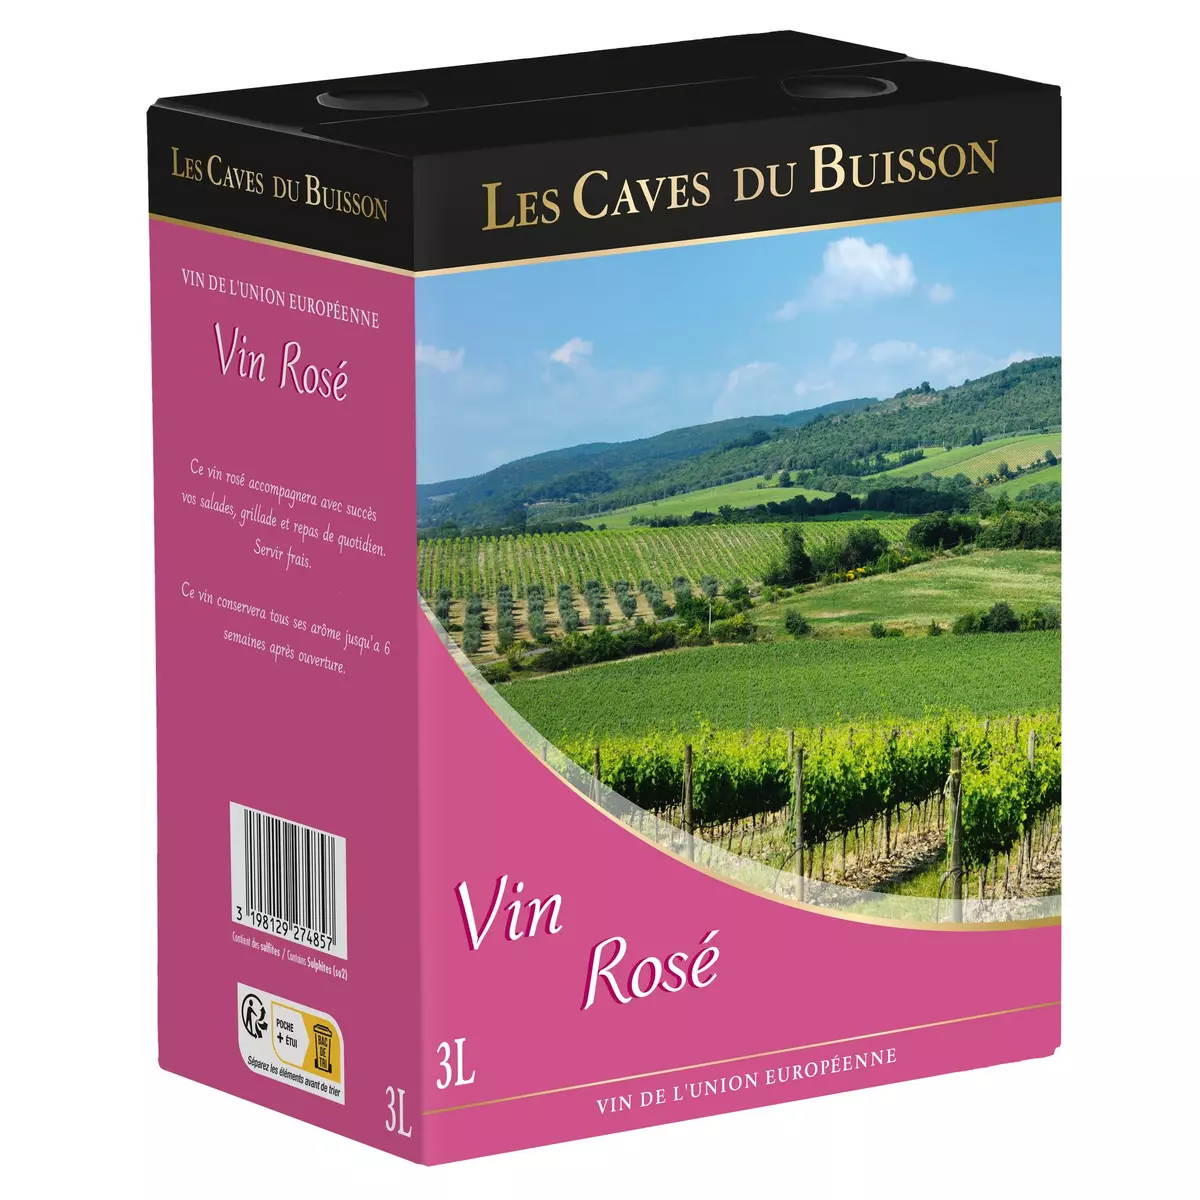 LES CAVES DU BUISSON Vin de la Communauté Européenne Les Caves du Buisson rosé bib 5L